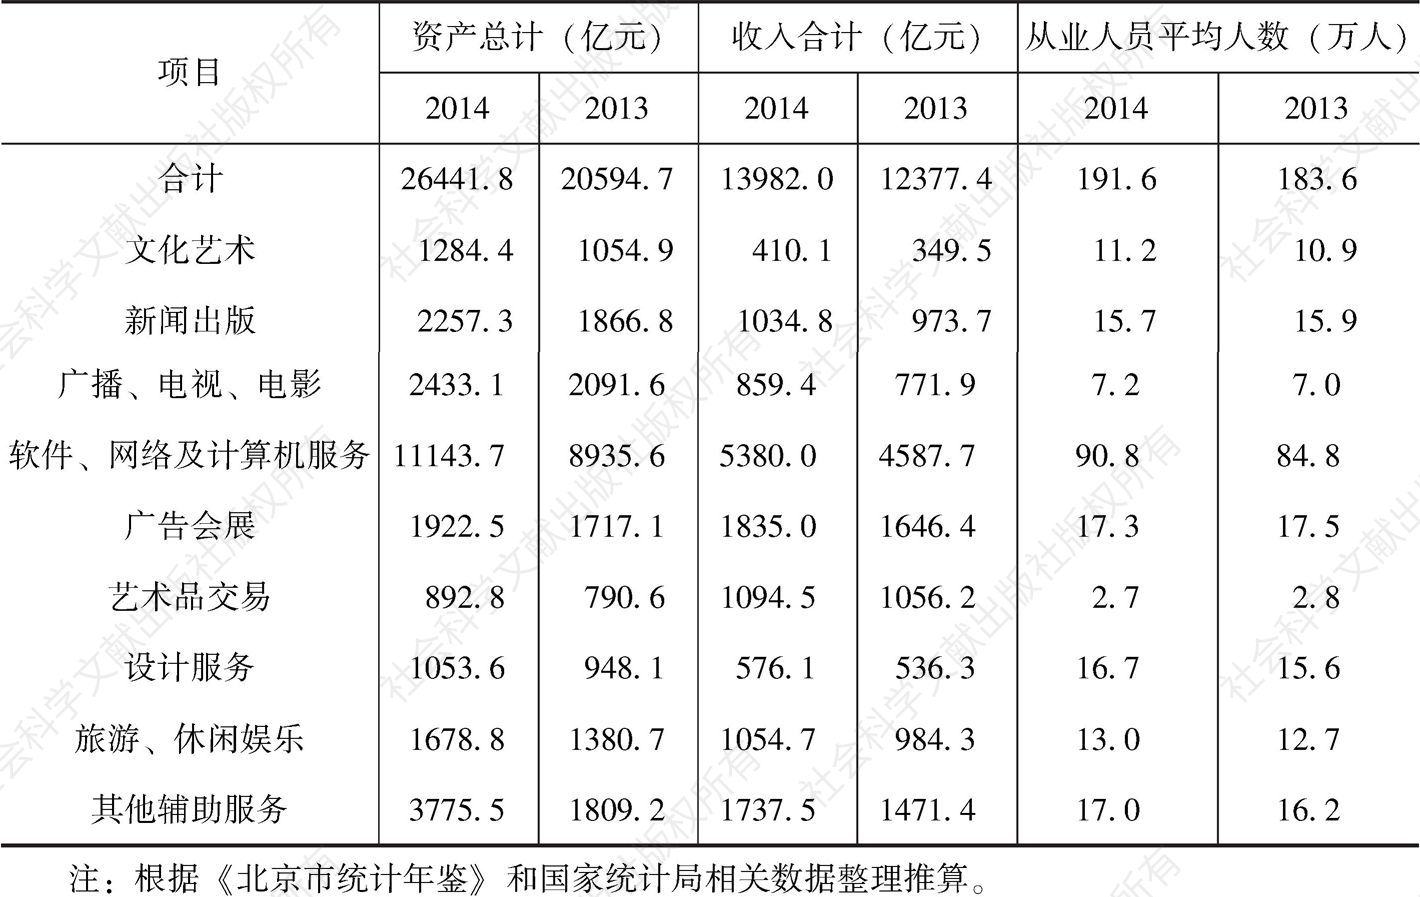 表4-3 2013～2014年北京市文化产业活动单位基本情况